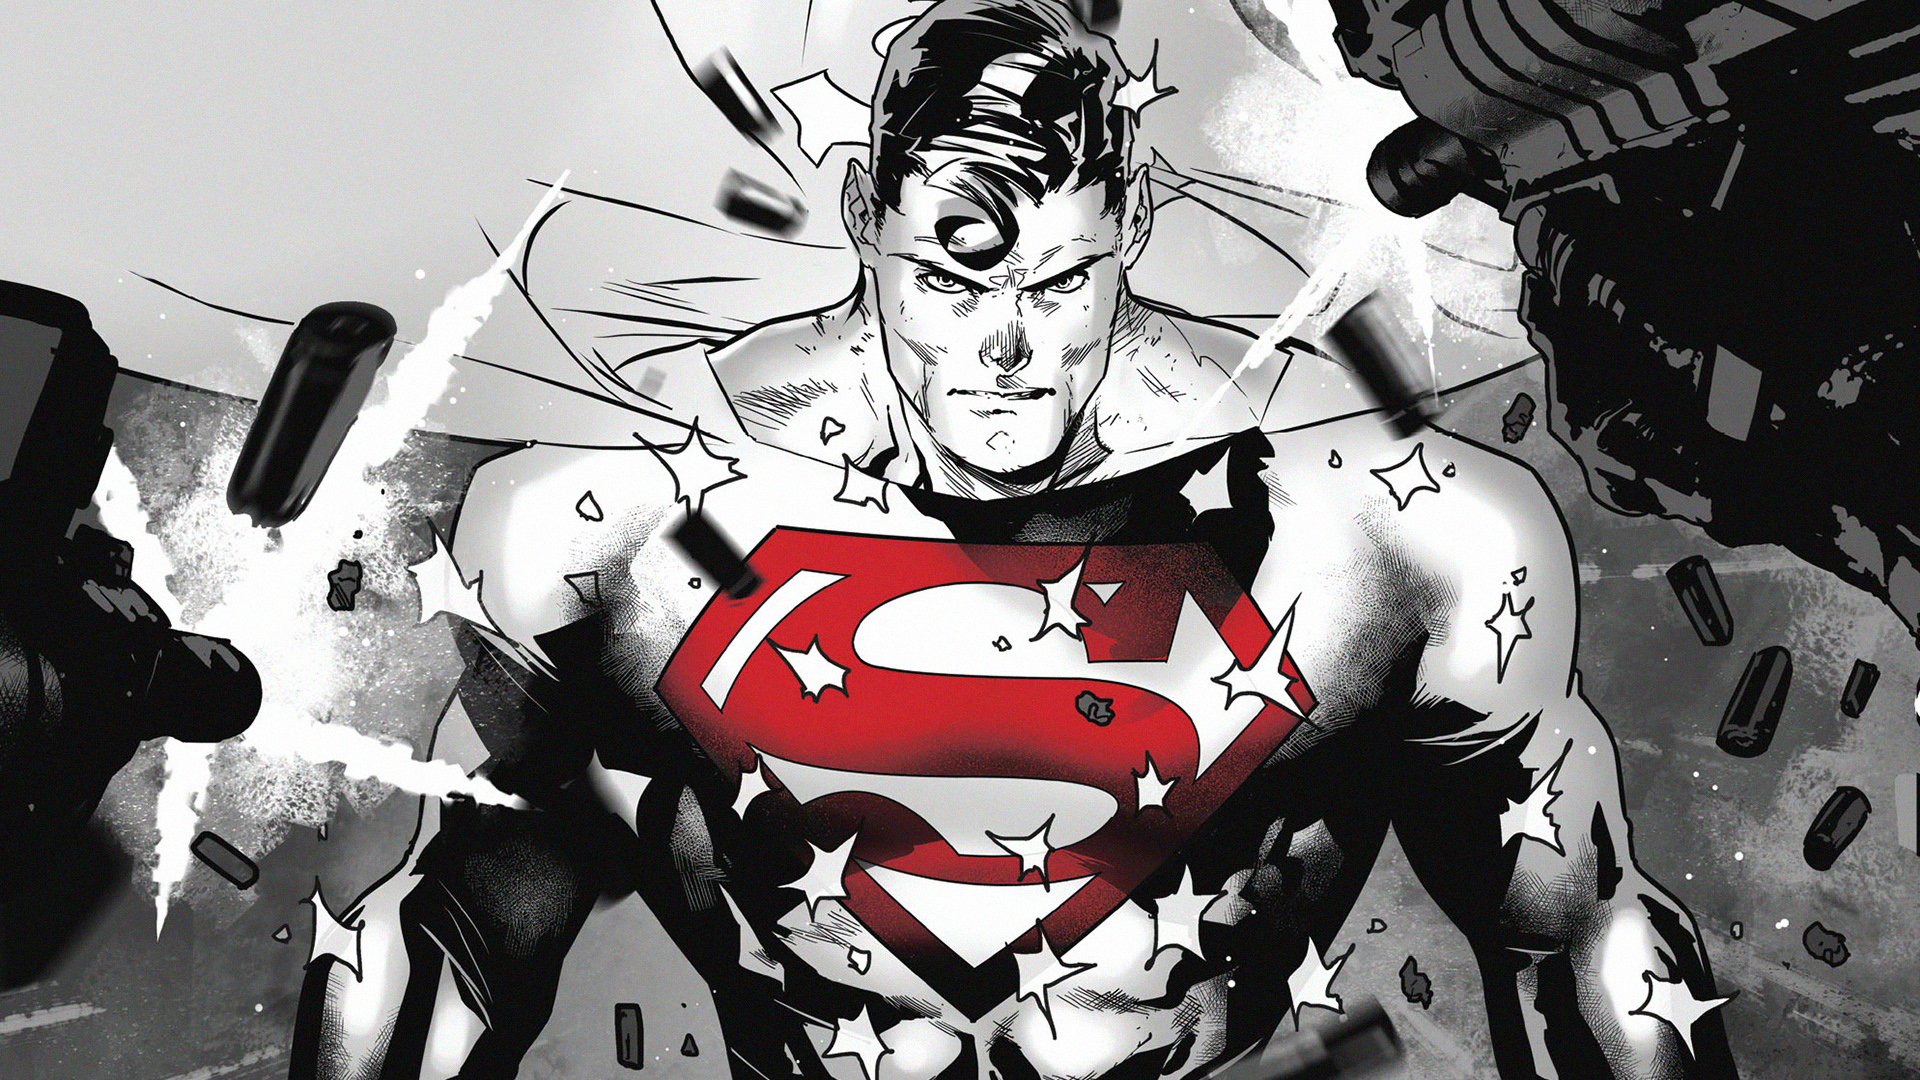 fond d'écran superman,personnage fictif,super héros,dessin animé,ligue de justice,héros